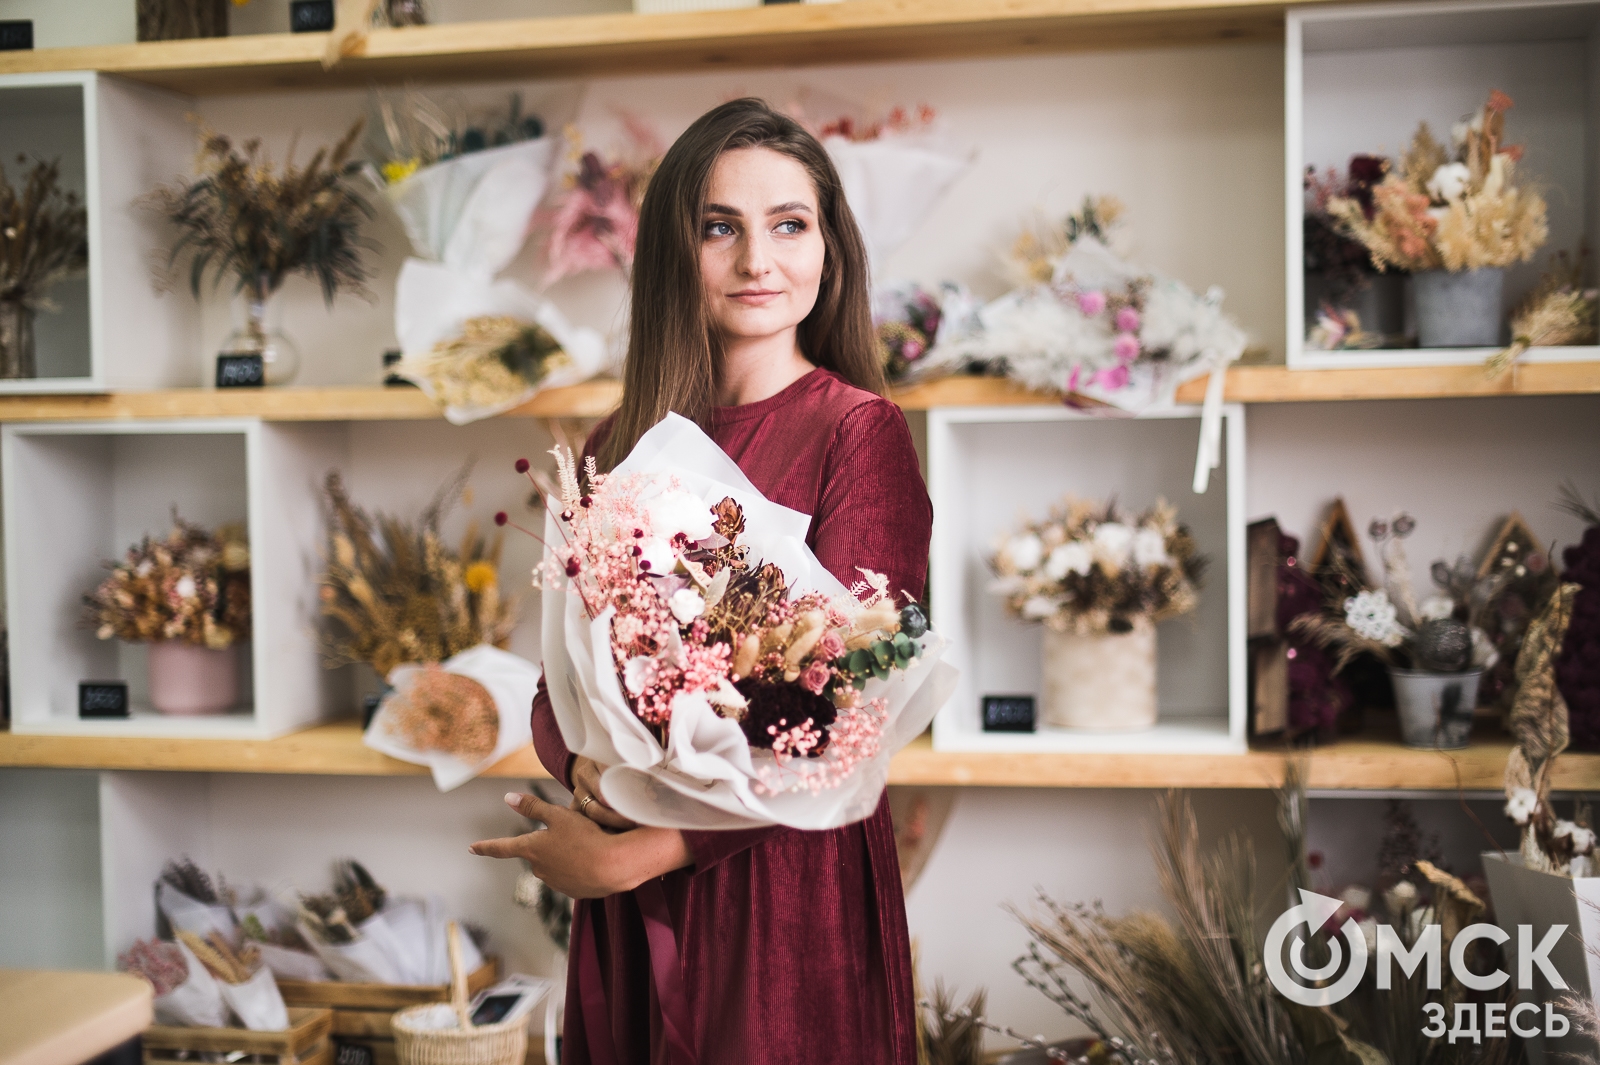 Доставка цветов в Омске от салона «Бизнес Флора»